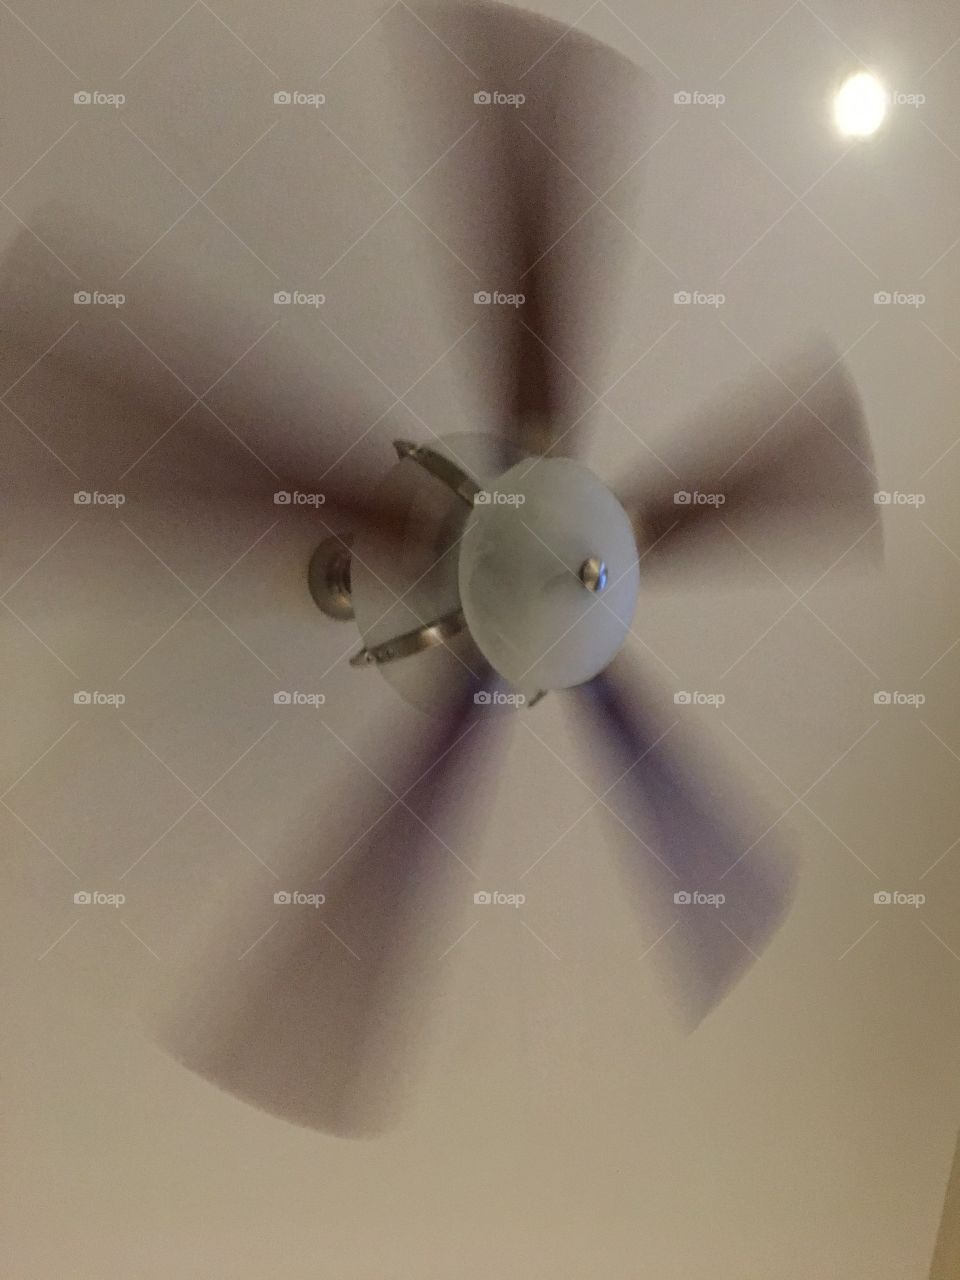 My biggest fan